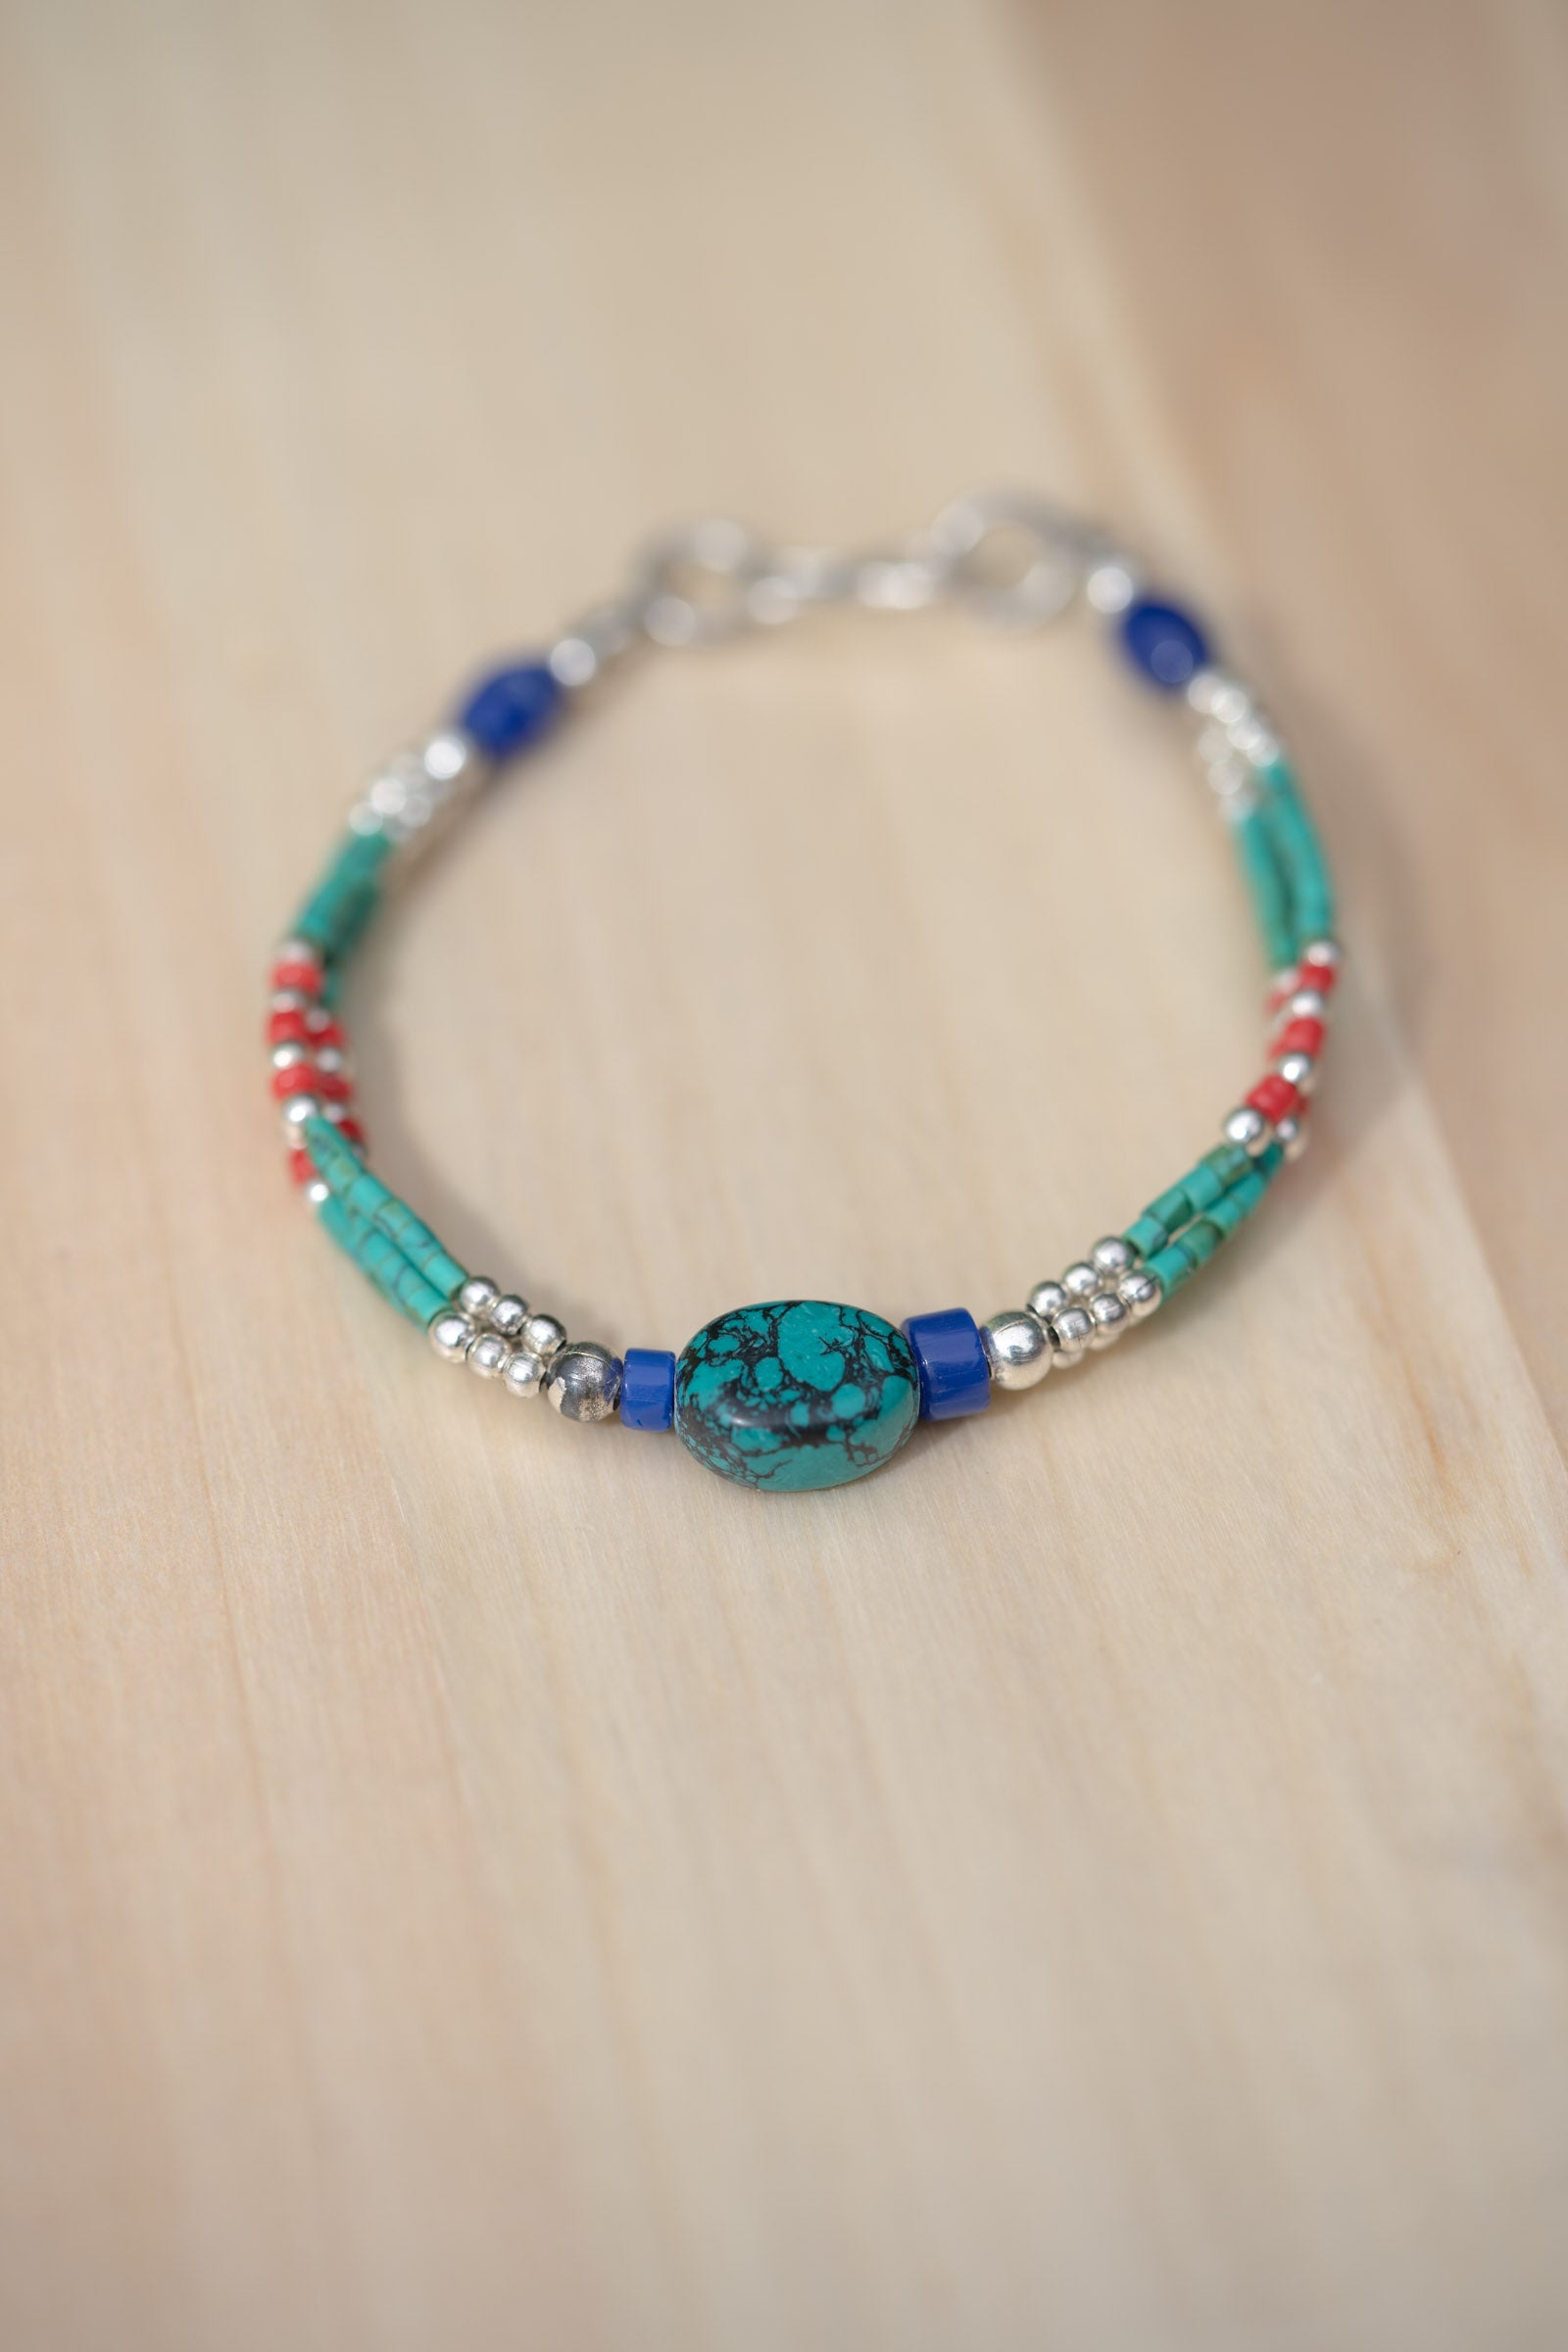 Afgani Style Turquoise Stone Bracelet for good fortune.